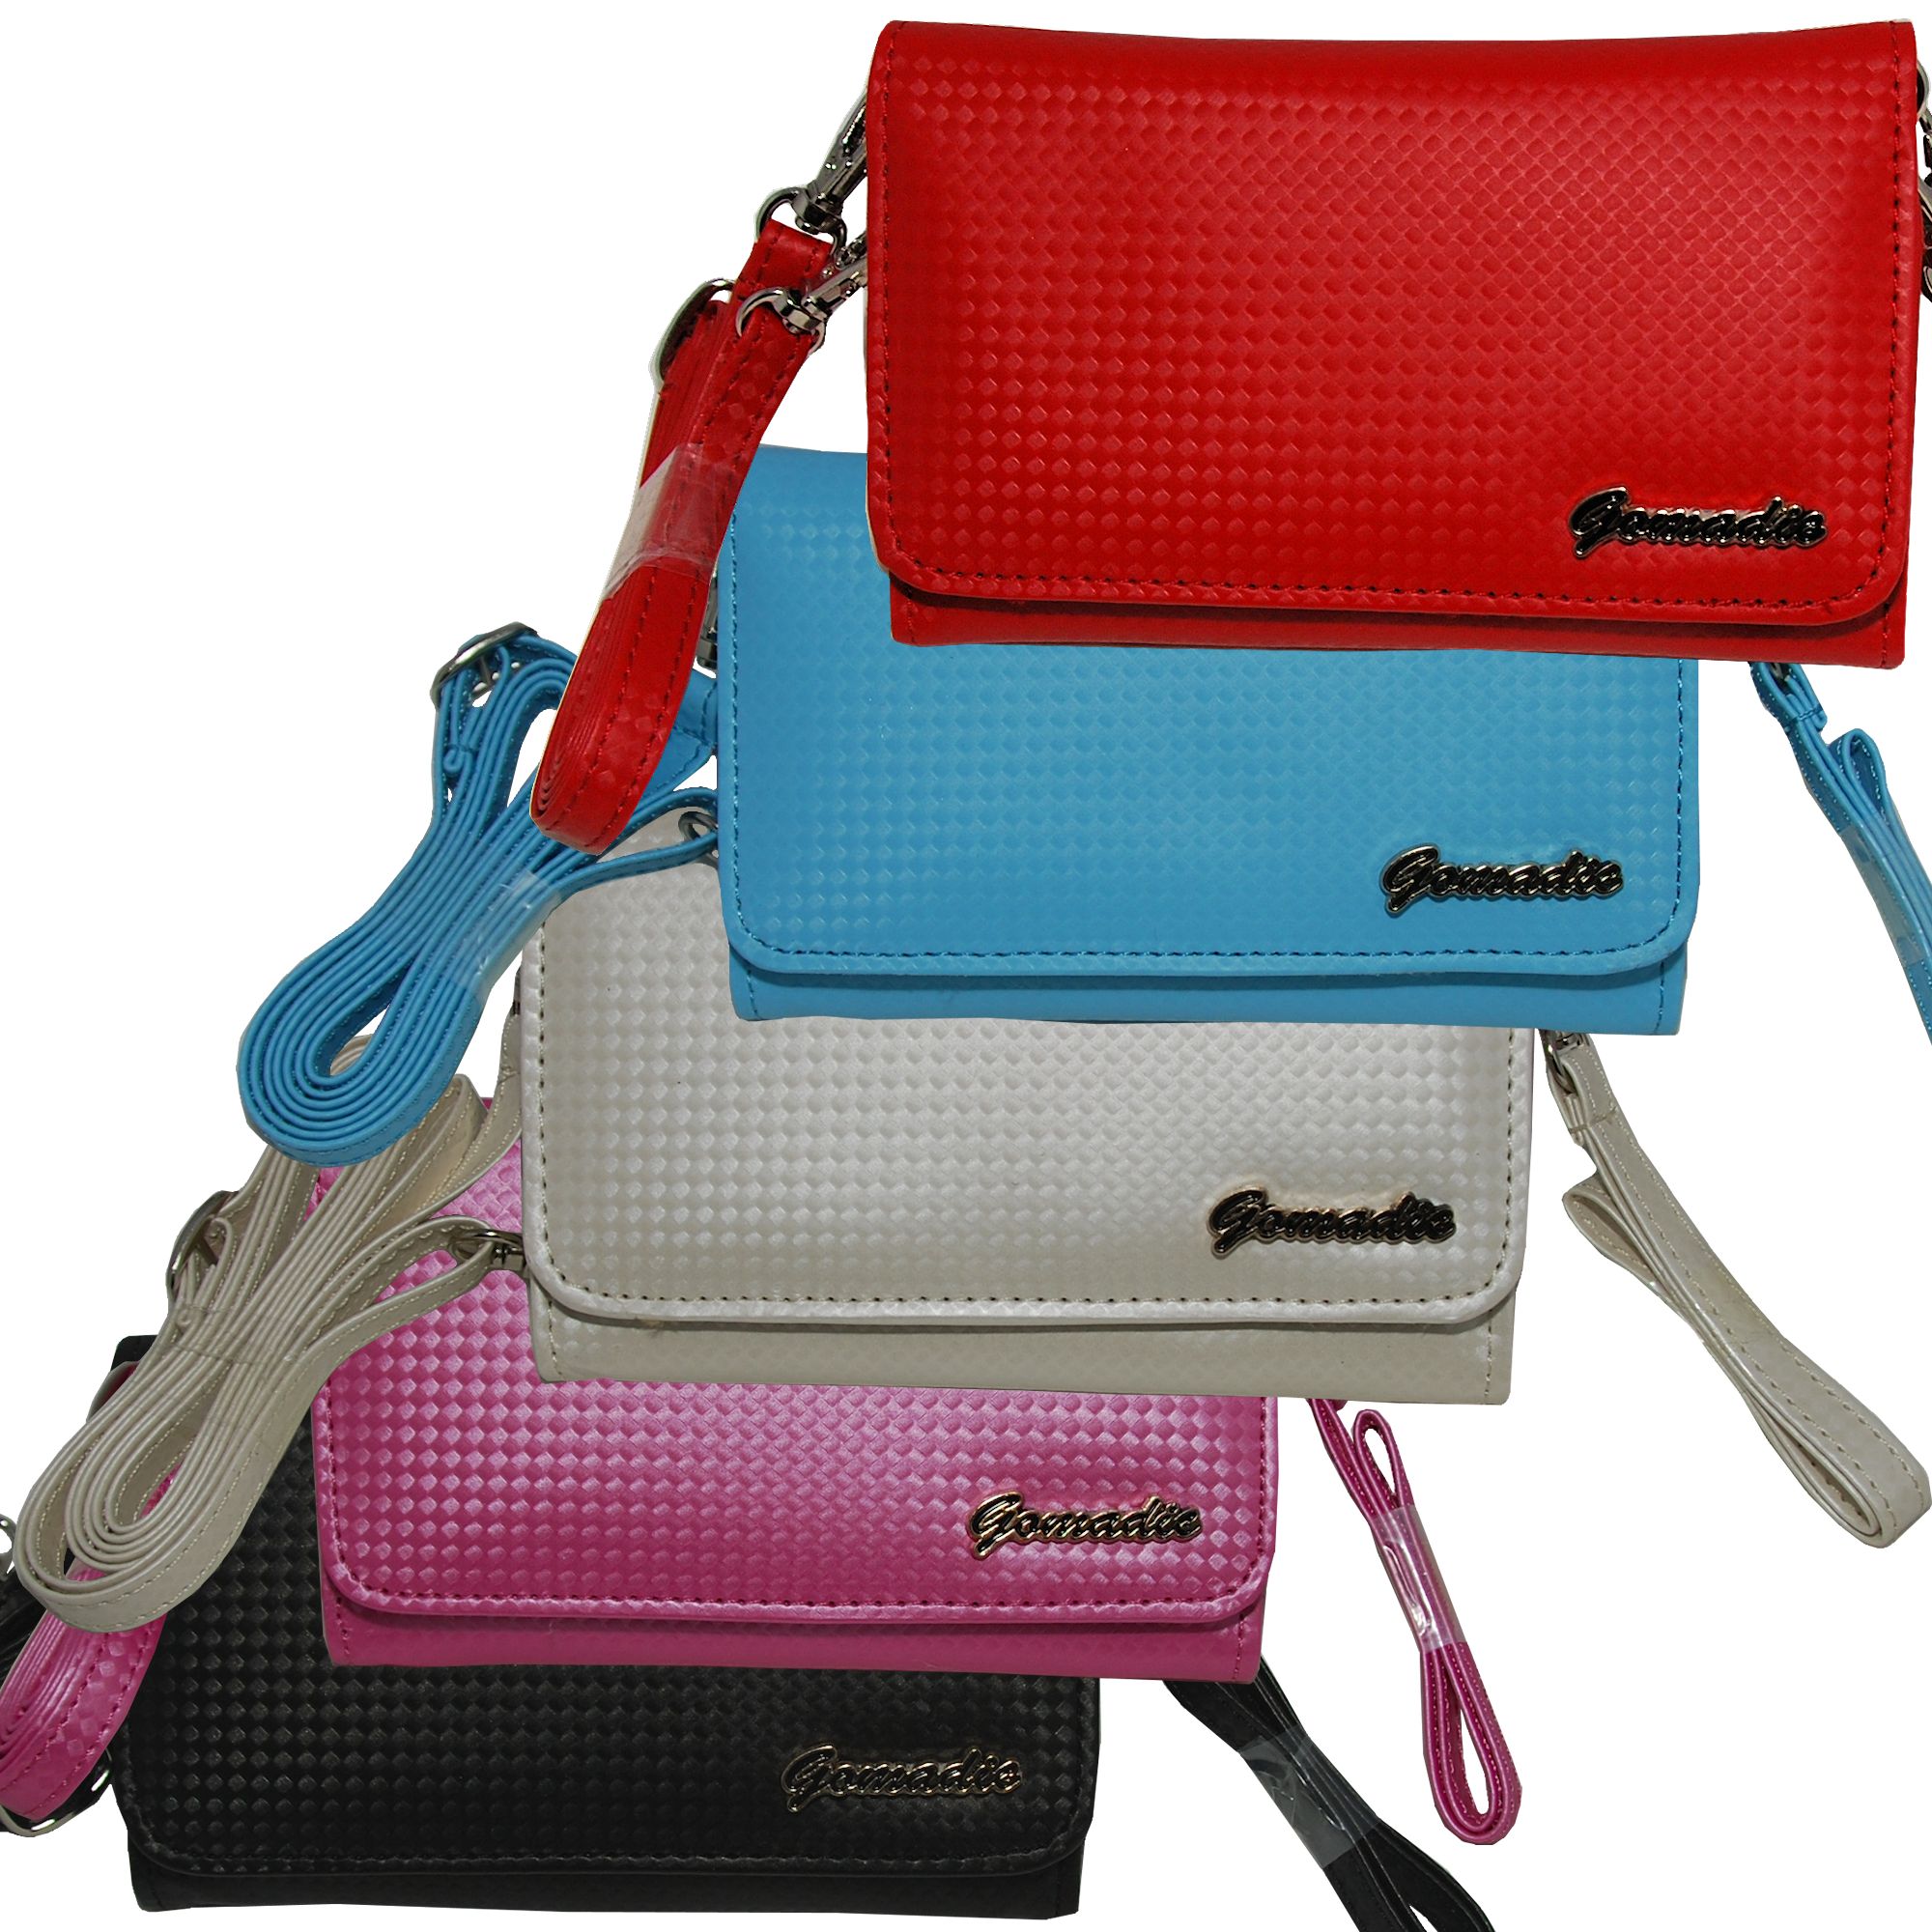 Purse Handbag Case for the Nokia E71 E71x E75  - Color Options Blue Pink White Black and Red